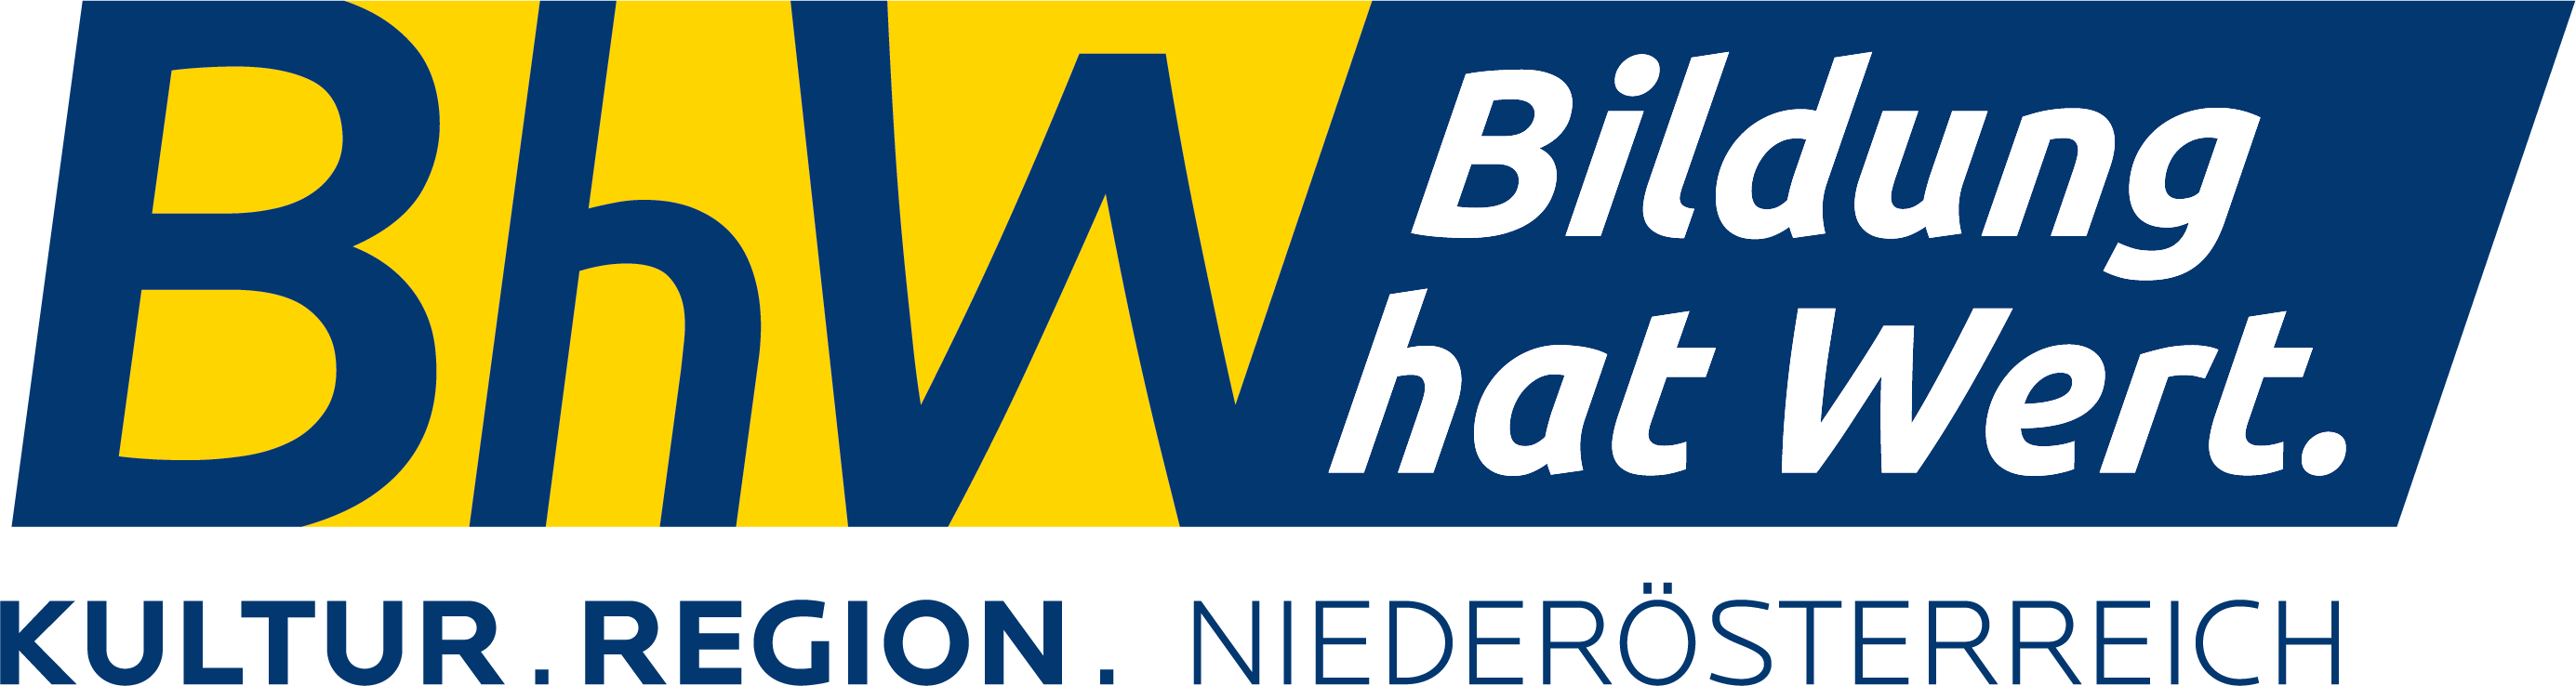 BhW Niederösterreich GmbH